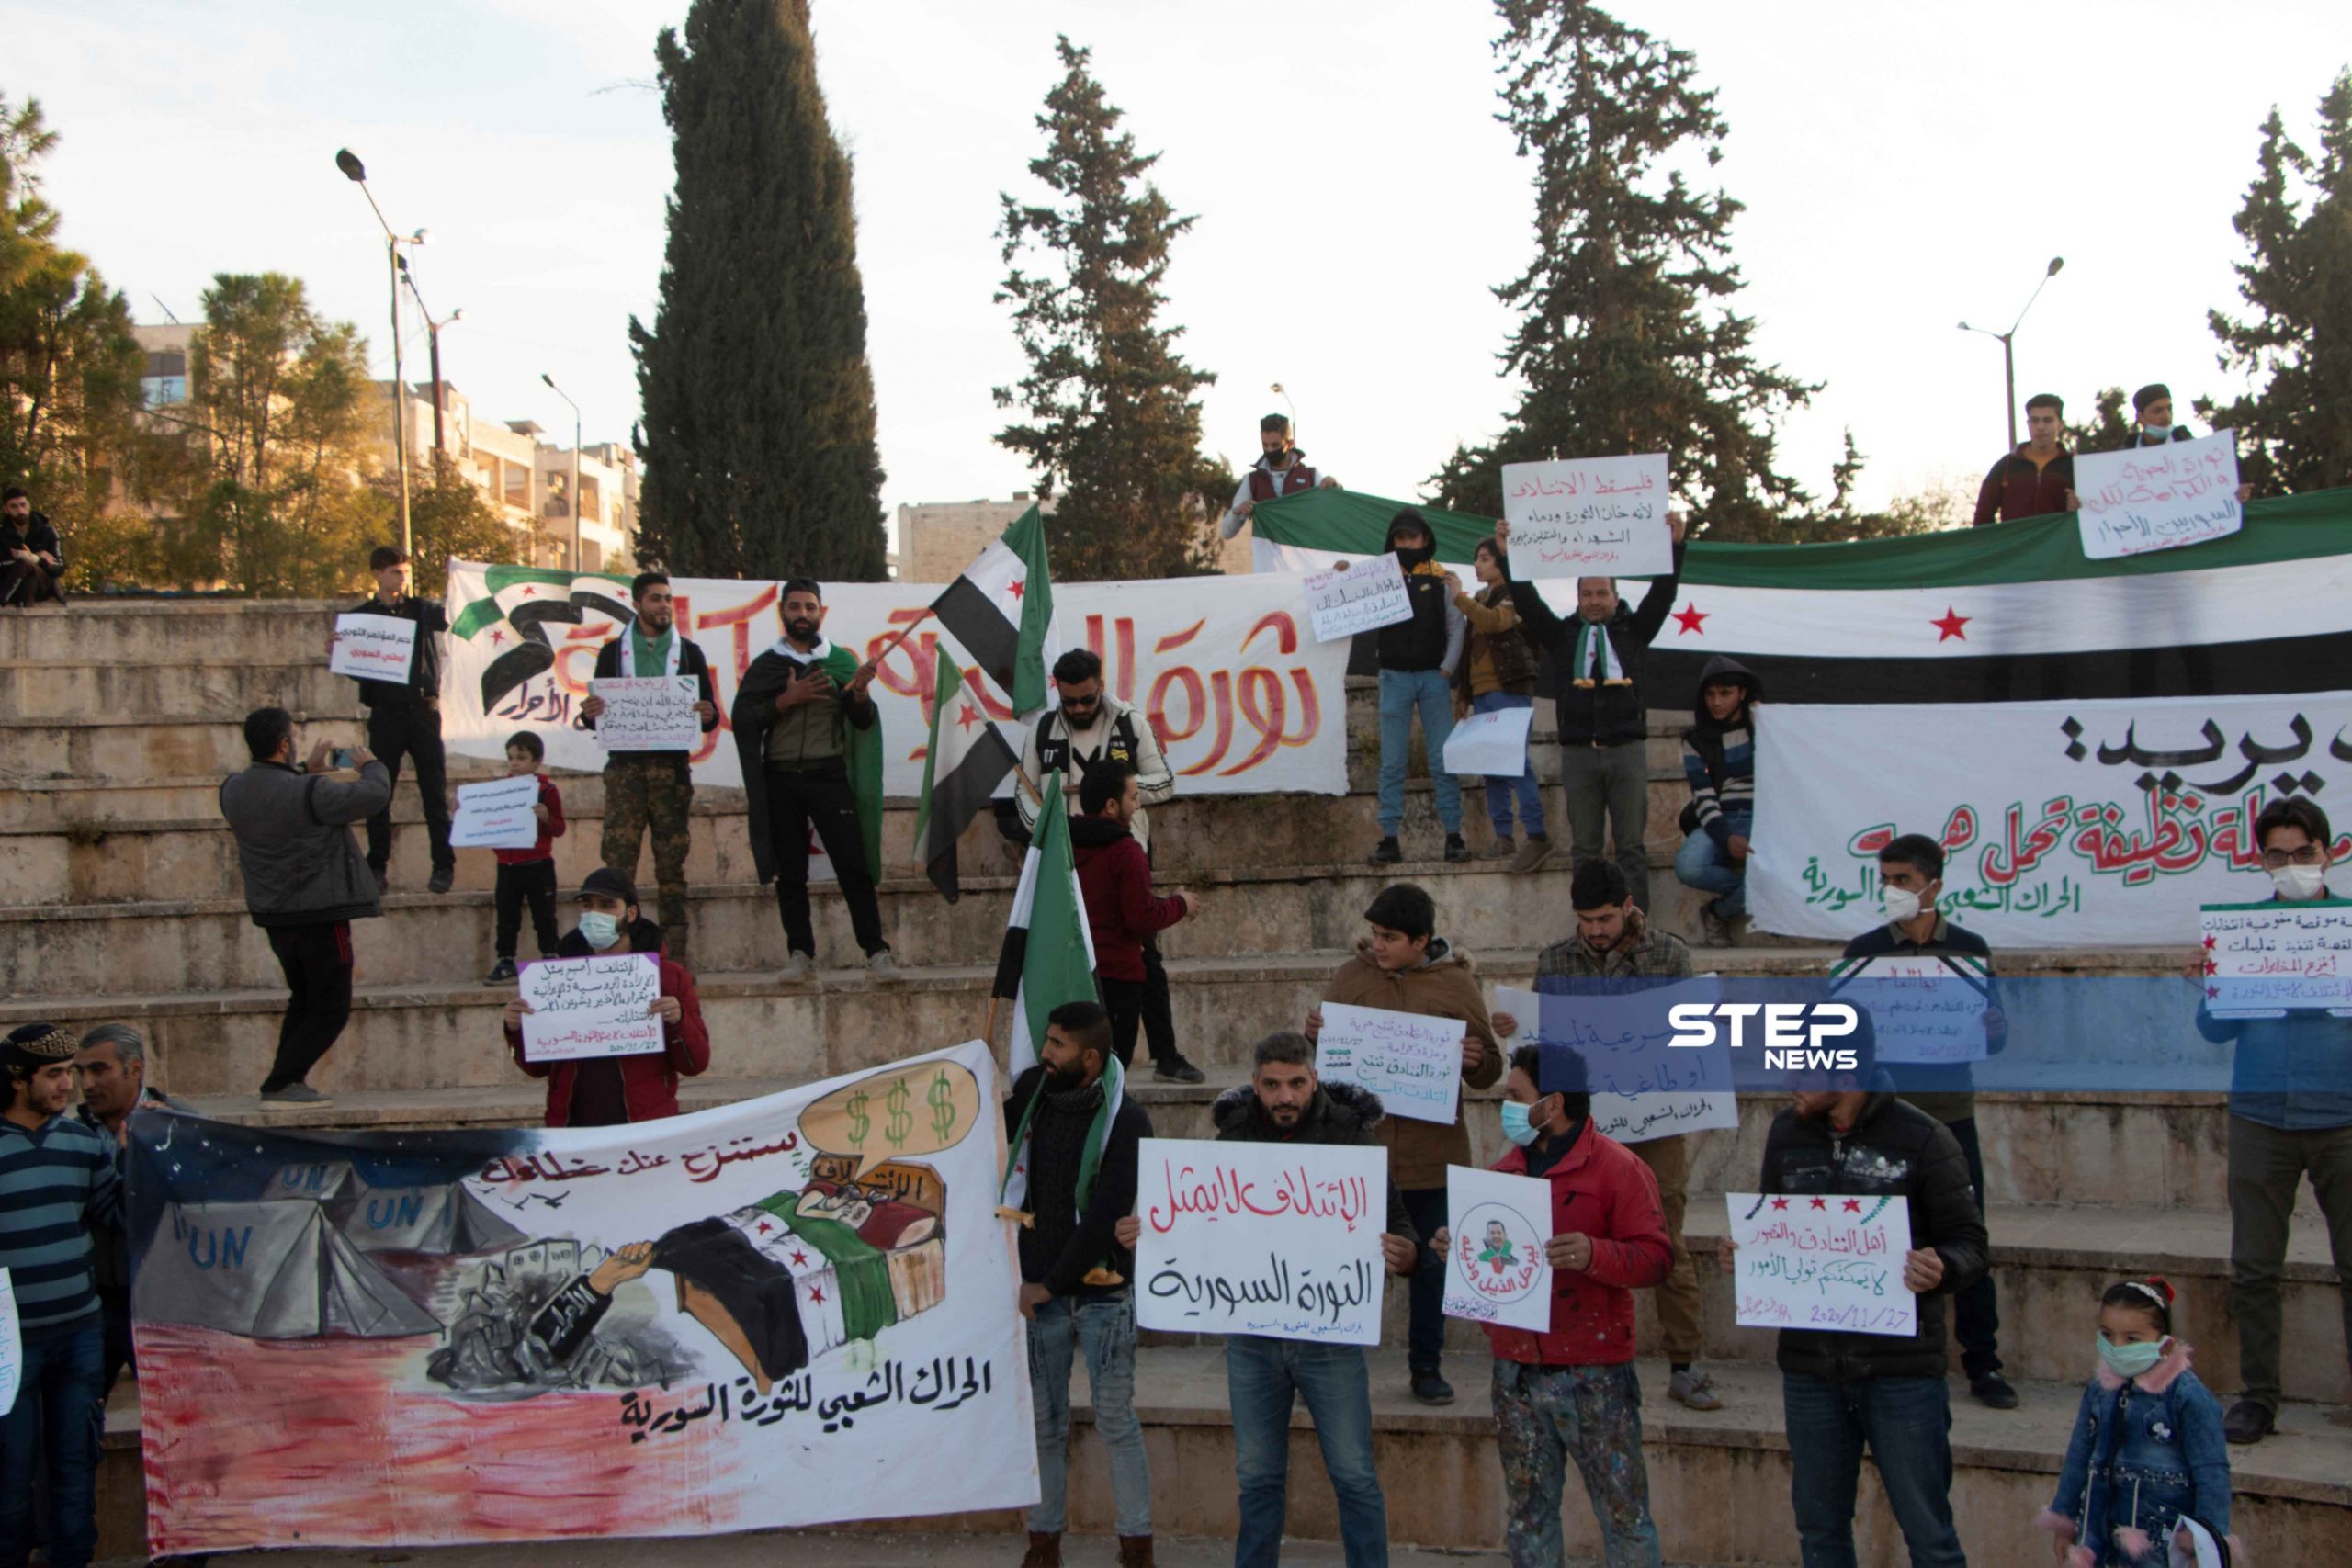 بالفيديو خاص|| بعبارات "الخائن والعميل" ناشطو إدلب يحتجون ضد الائتلاف السوري المعارض